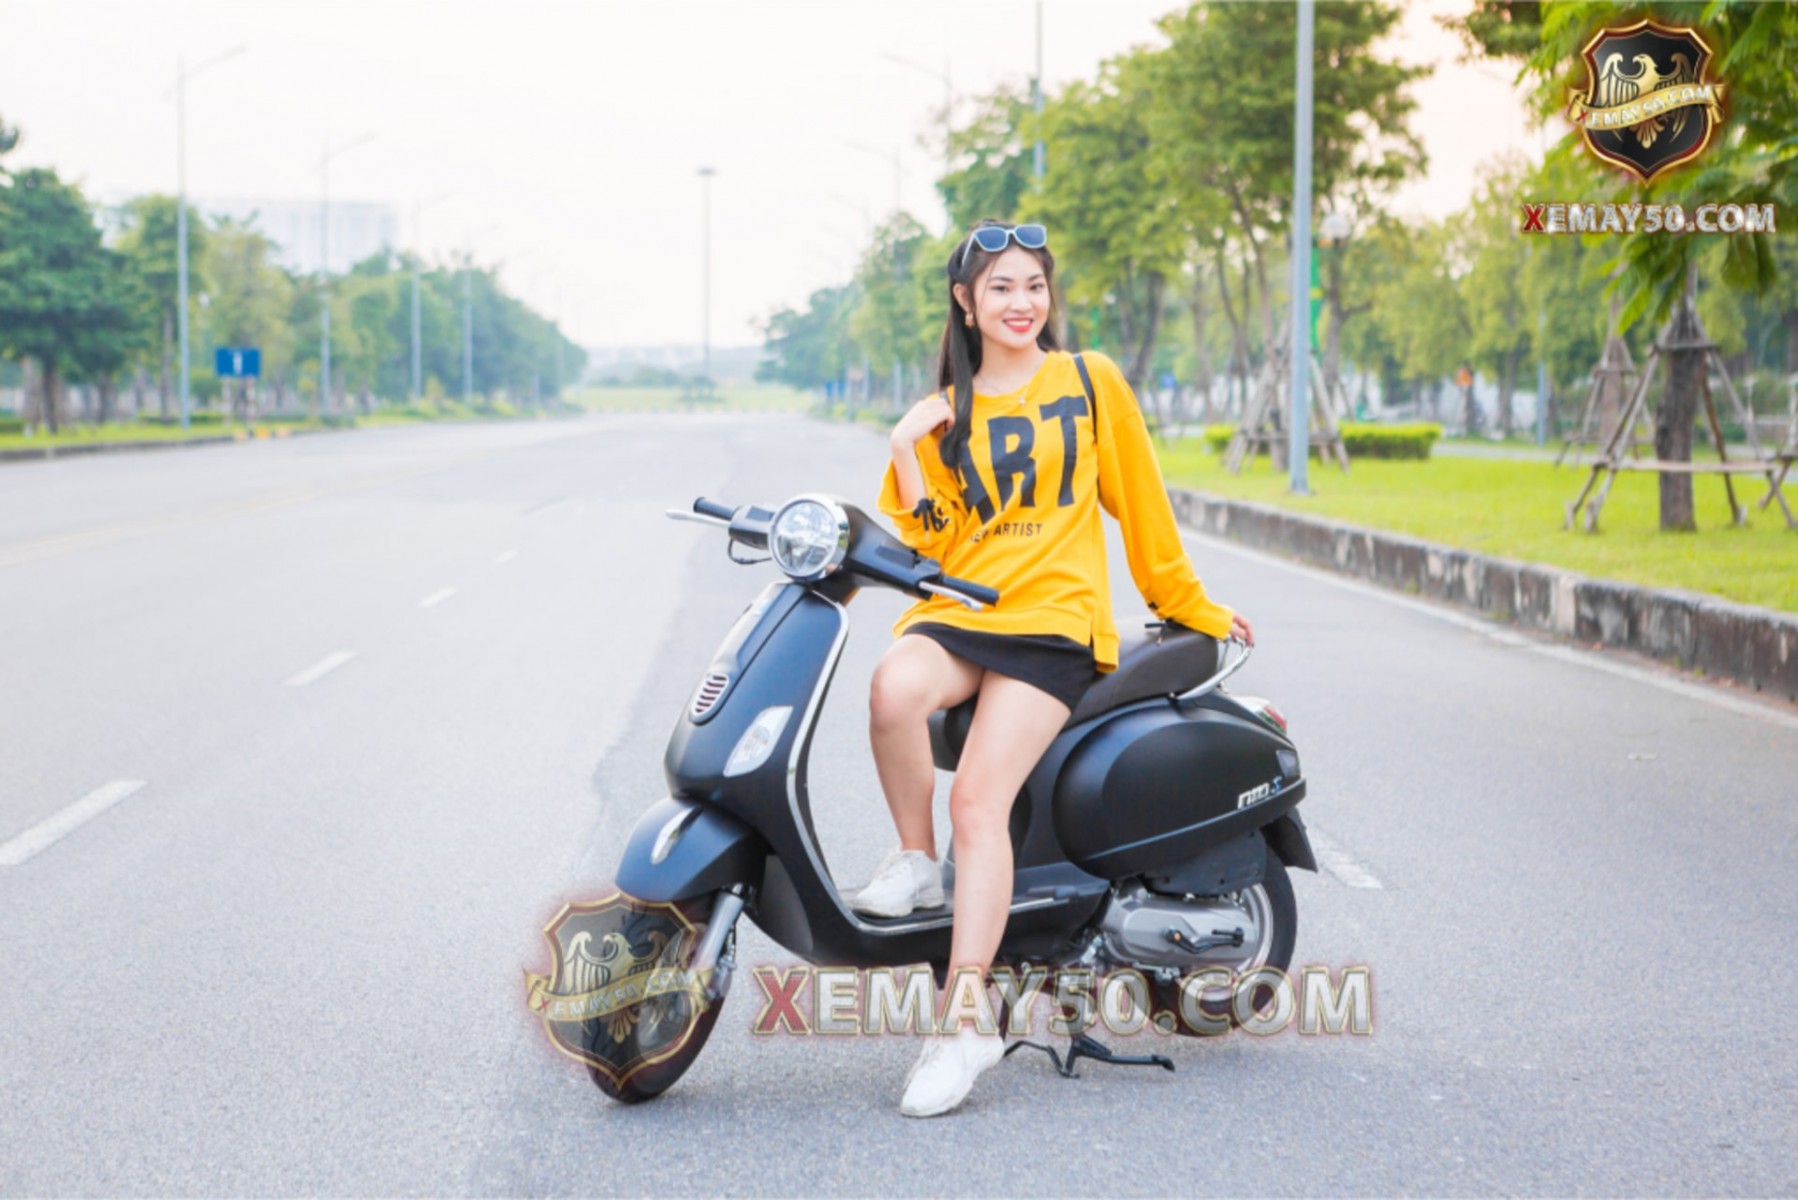 Địa chỉ phân phối xe máy 50cc uy tín ở Đà Nẵng được khách hàng thực tế tin tưởng